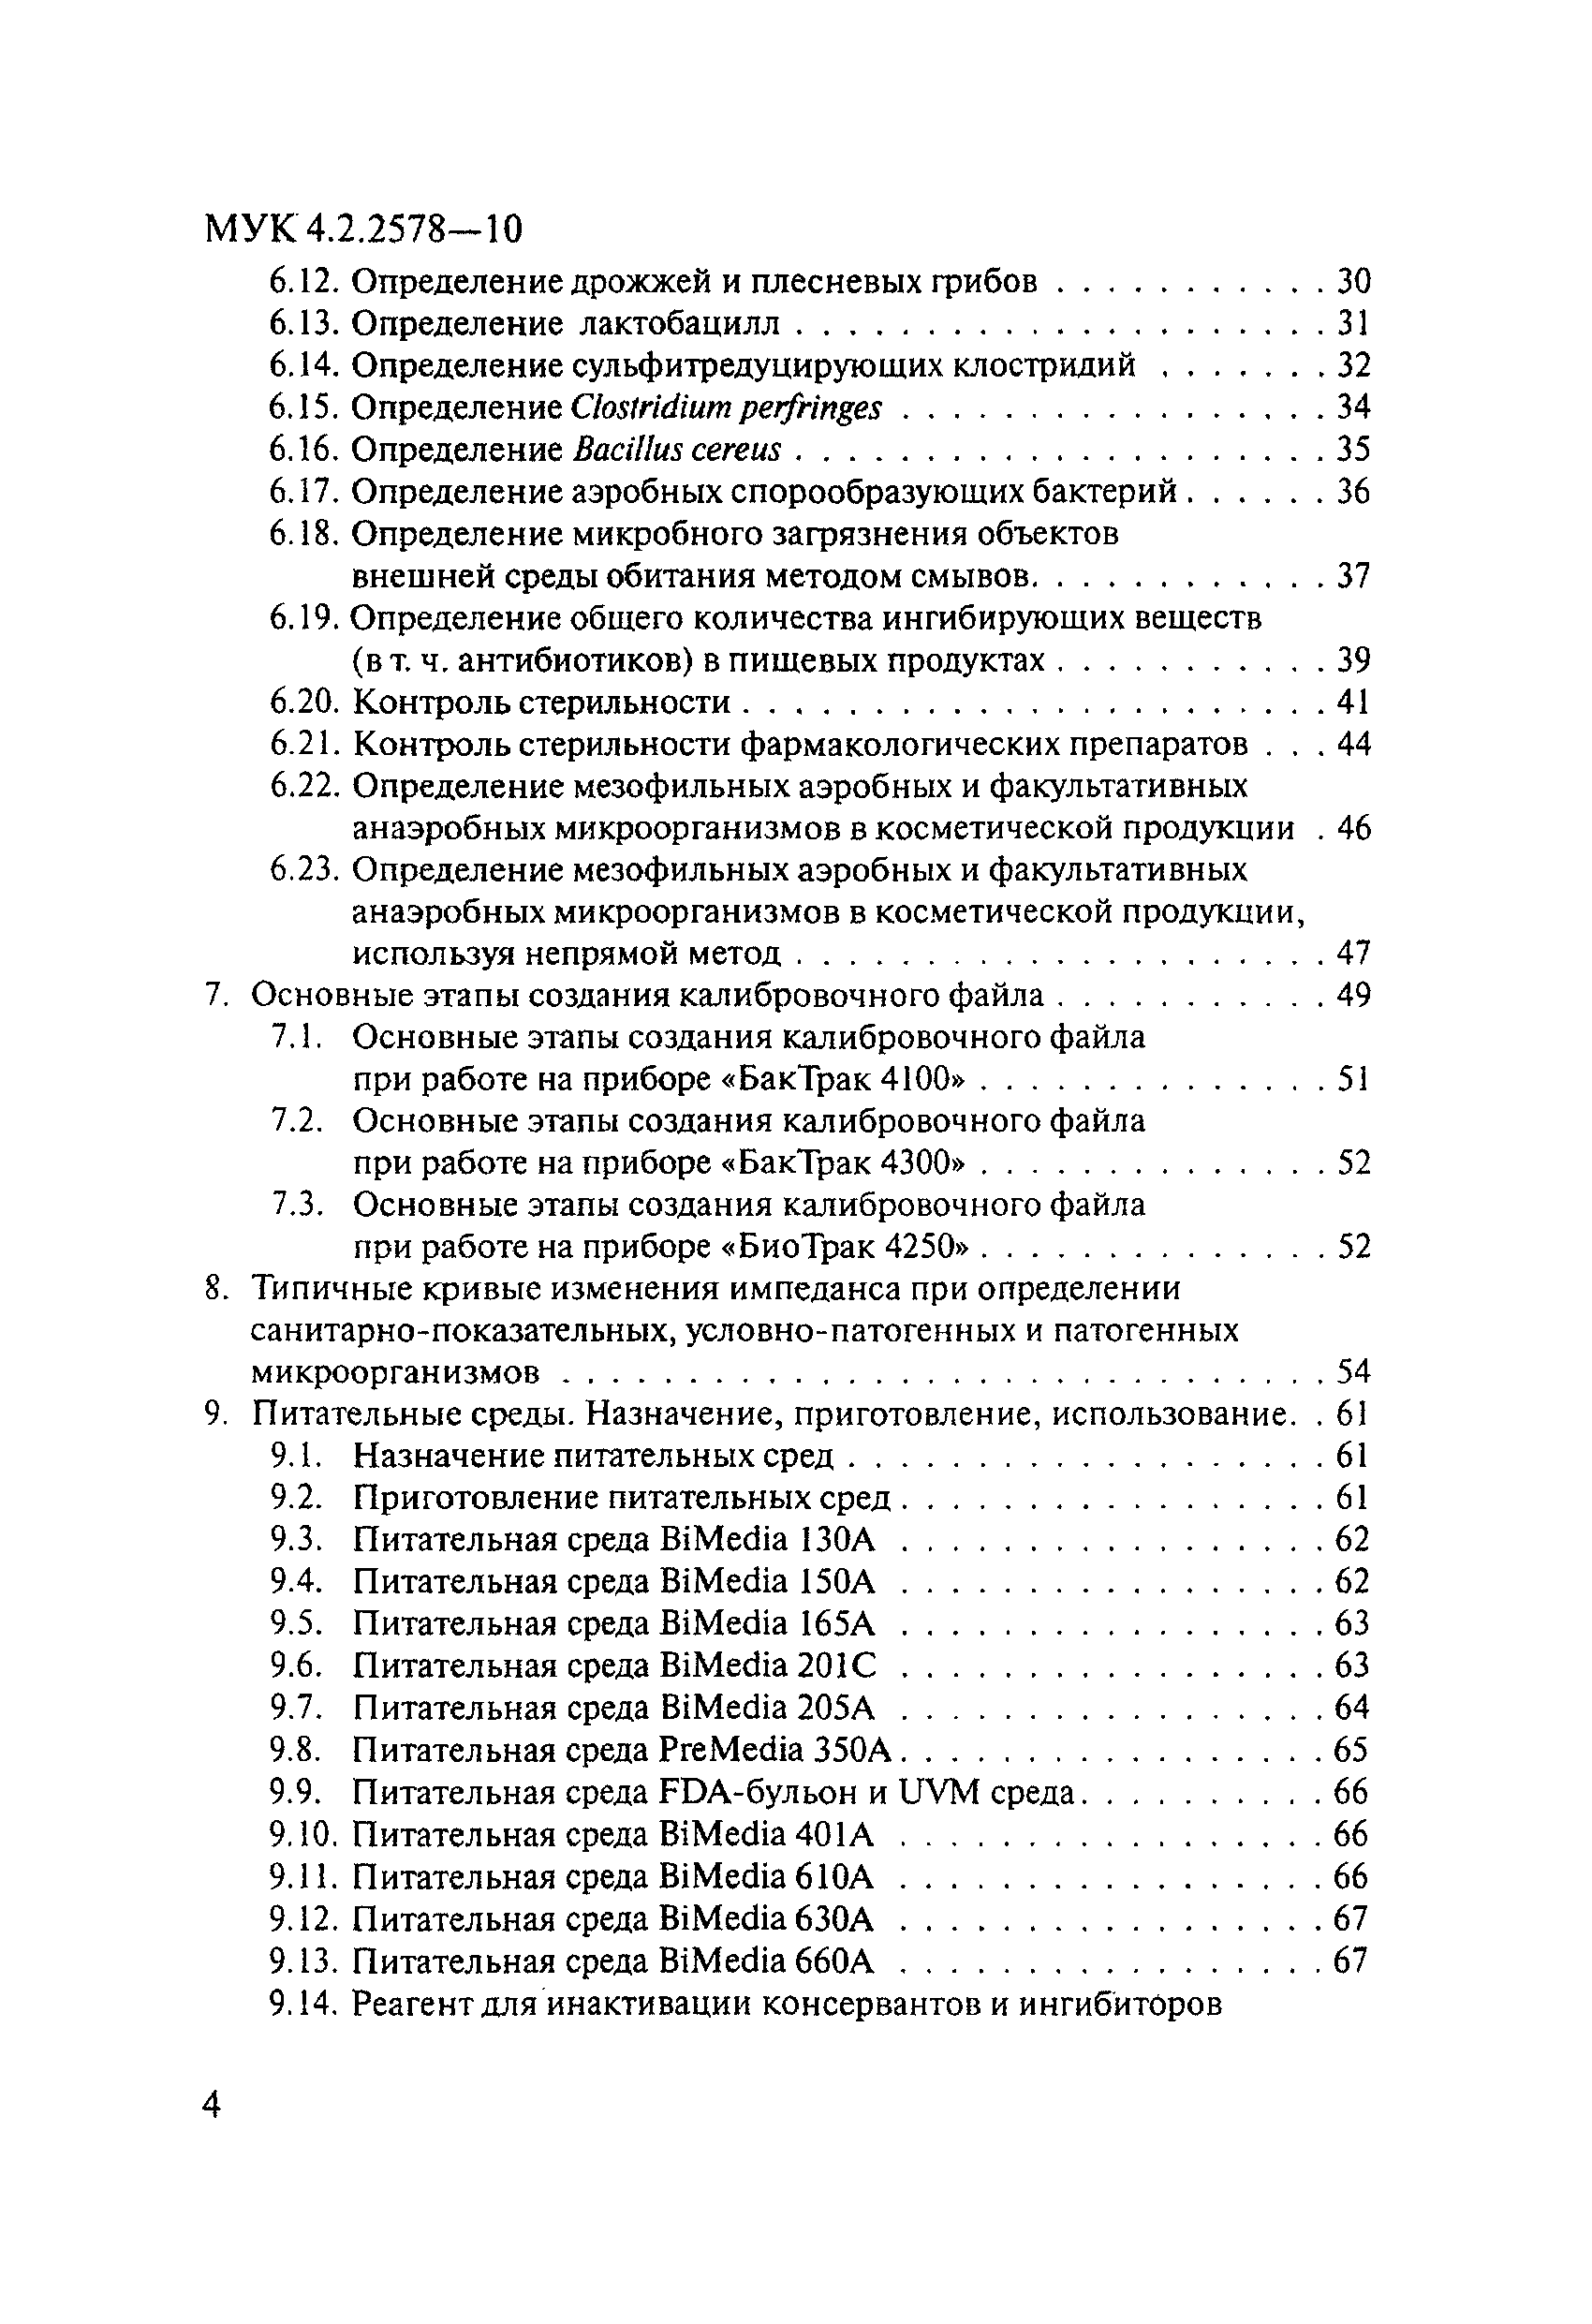 МУК 4.2.2578-10